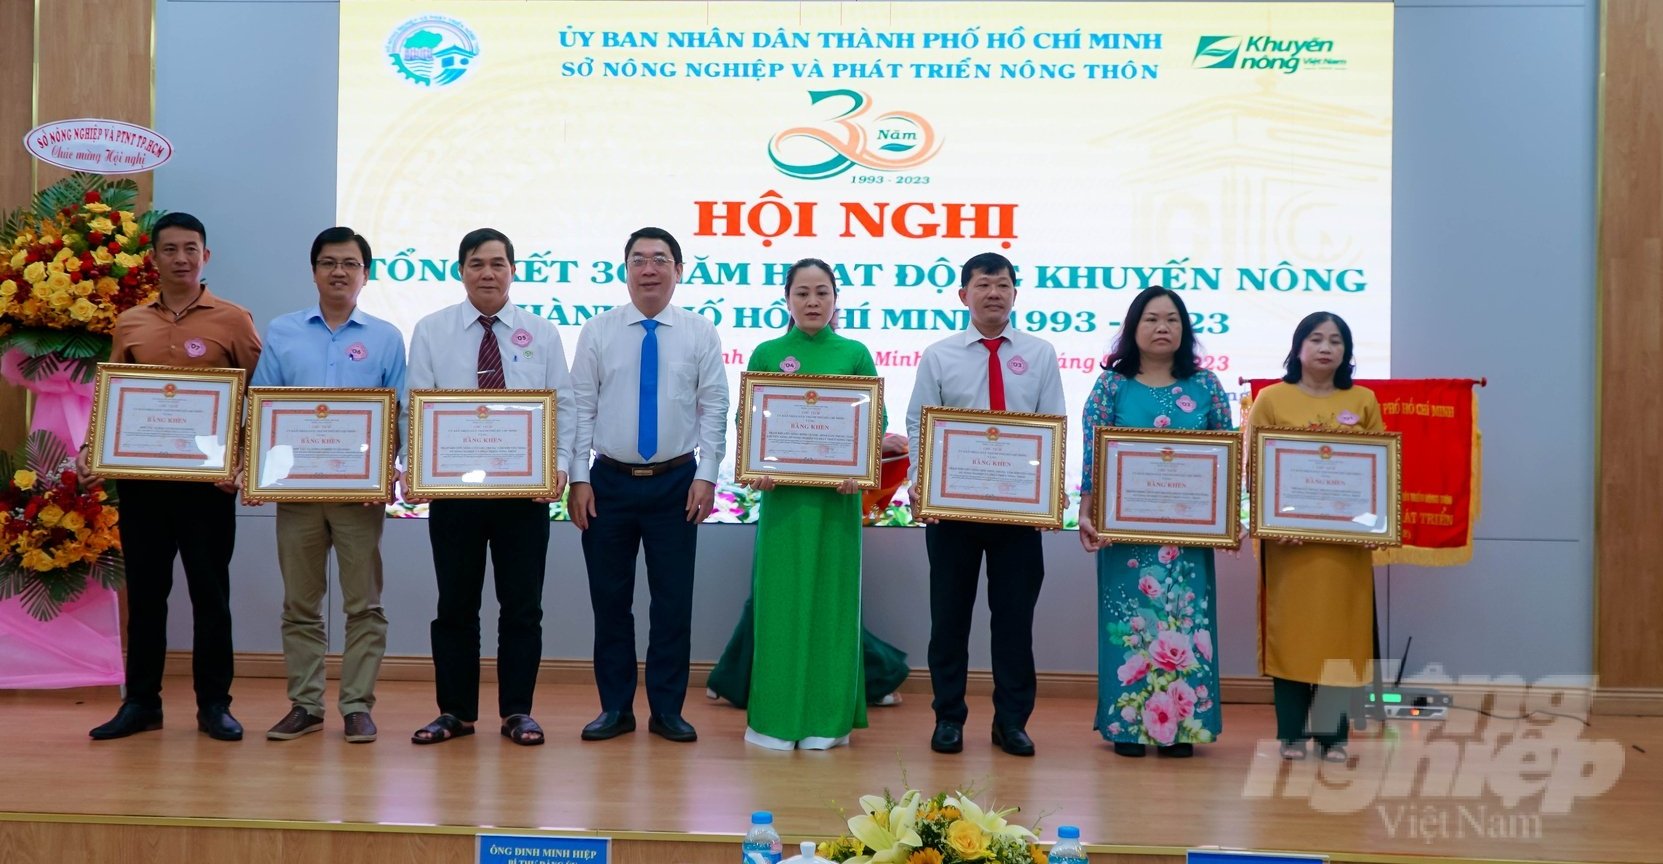 Nhiều tập thể, cá nhân xuất sắc được UBND TP.HCM và Sở NN-PTNT trao tặng bằng khen nhân kỷ niệm 30 năm hoạt động khuyến nông. Ảnh: Lê Bình.